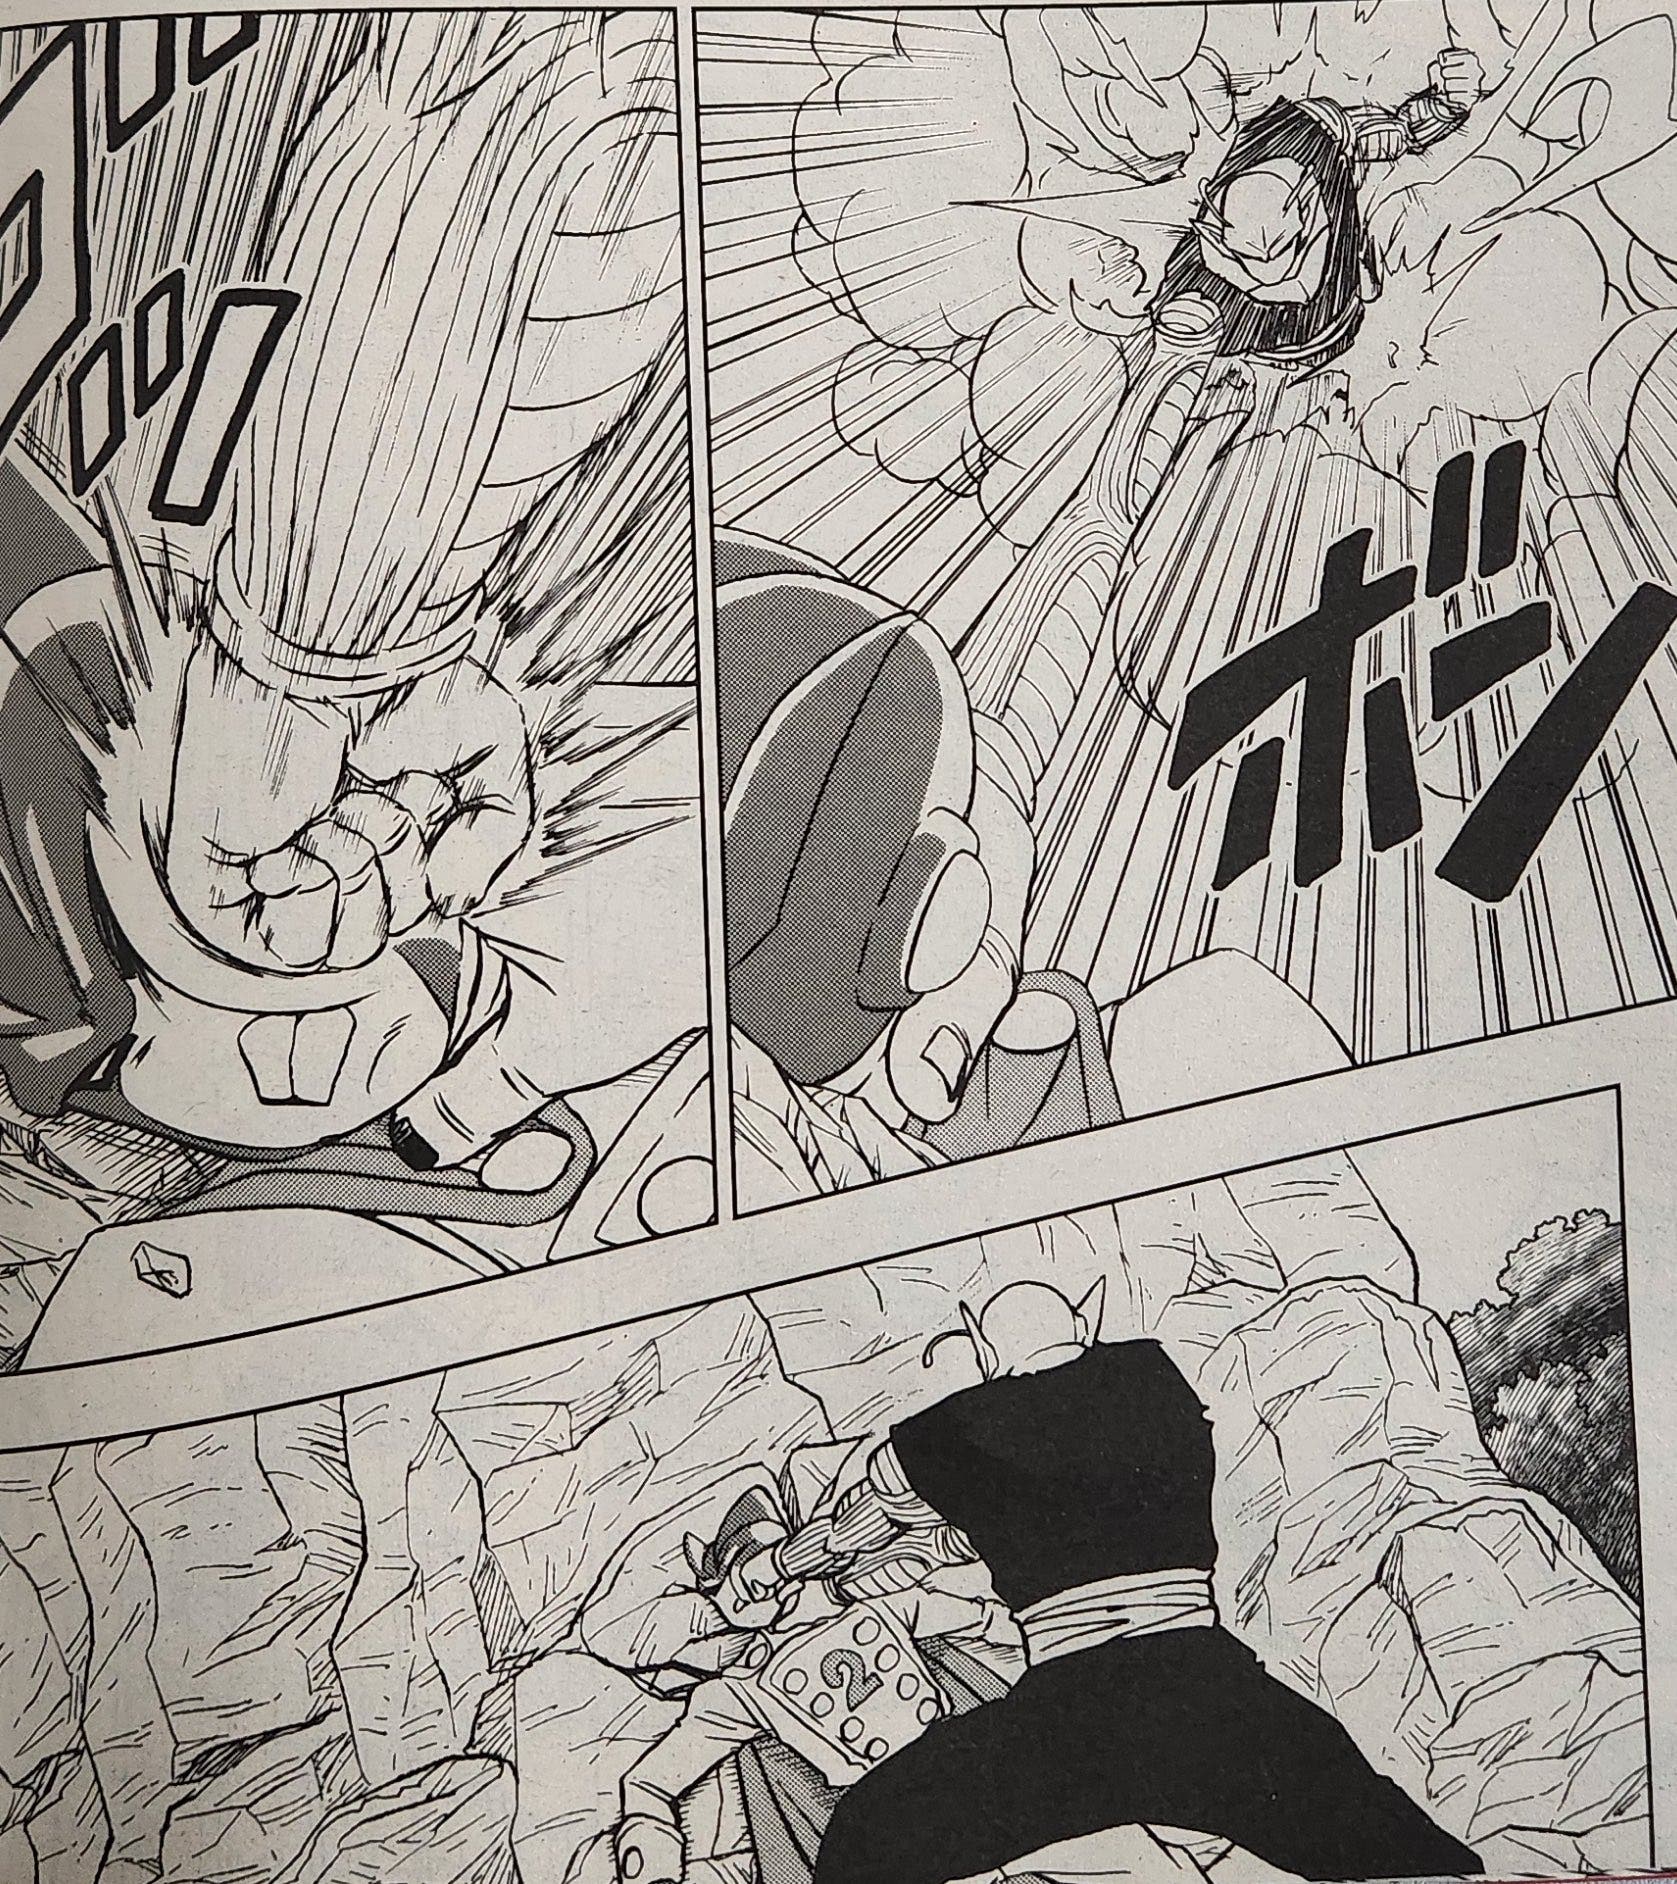 Dragon Ball Super: Filtrado el capítulo 92 del manga con el